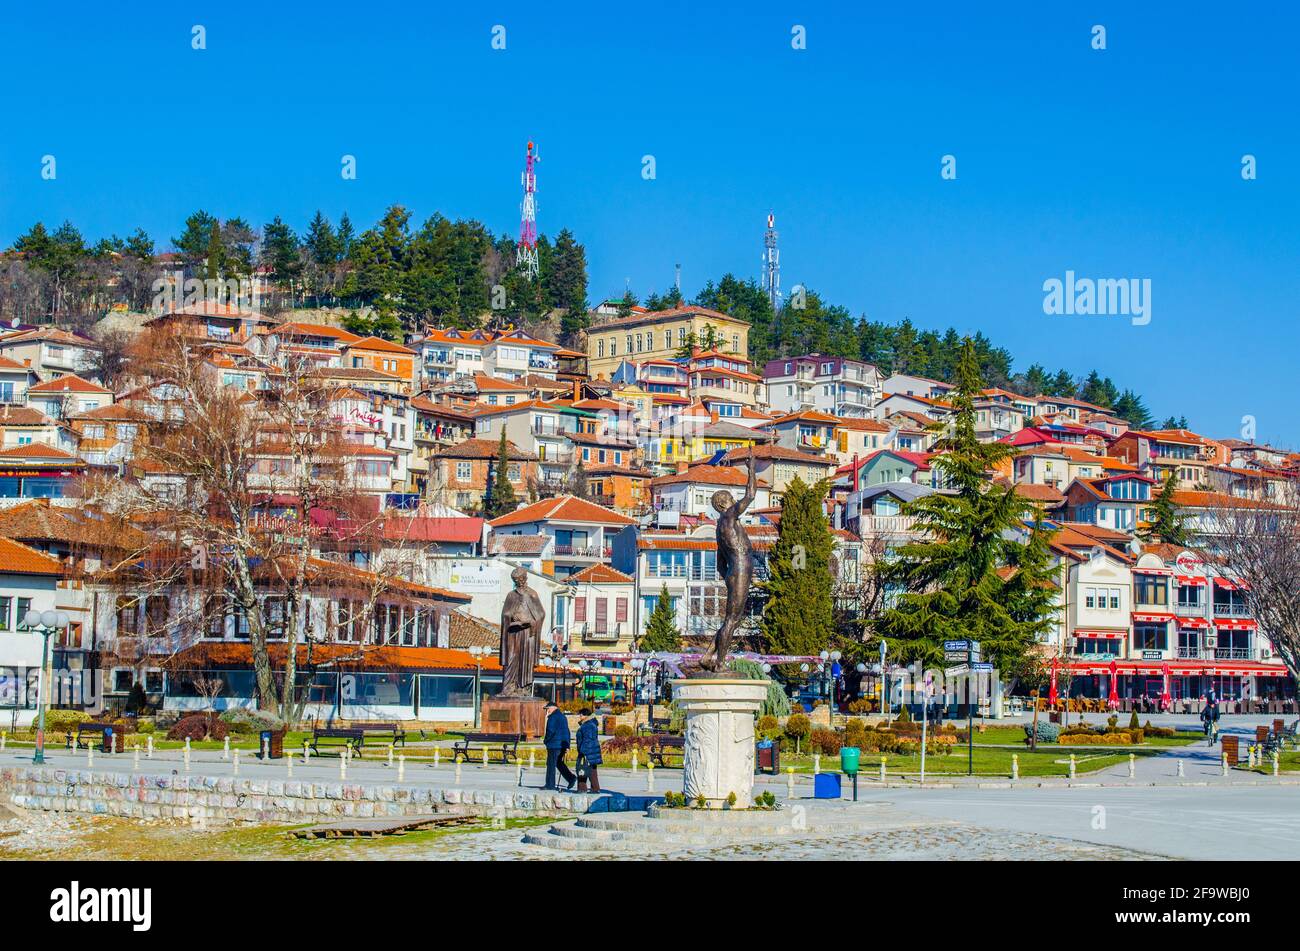 OHRID, MACEDONIA, 14 FEBBRAIO 2014: Vista della parte storica della città di ohrid in macedonia - fyrom - che appartiene alla lista del patrimonio mondiale dell'unesco Foto Stock